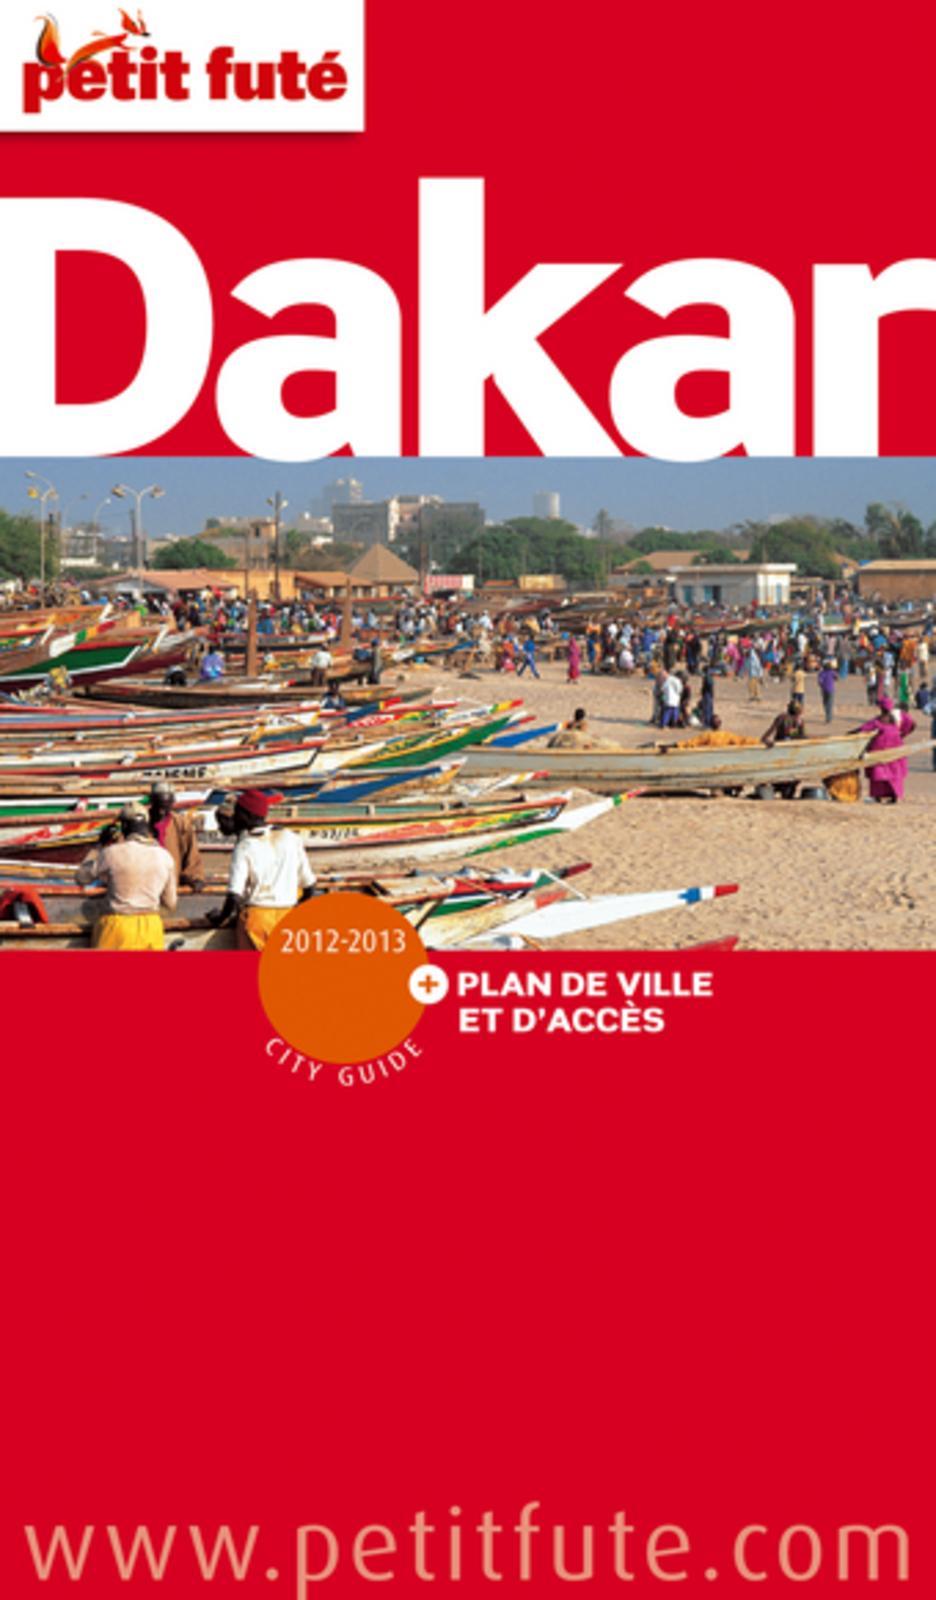 Le Petit Futé Dakar est arrivé